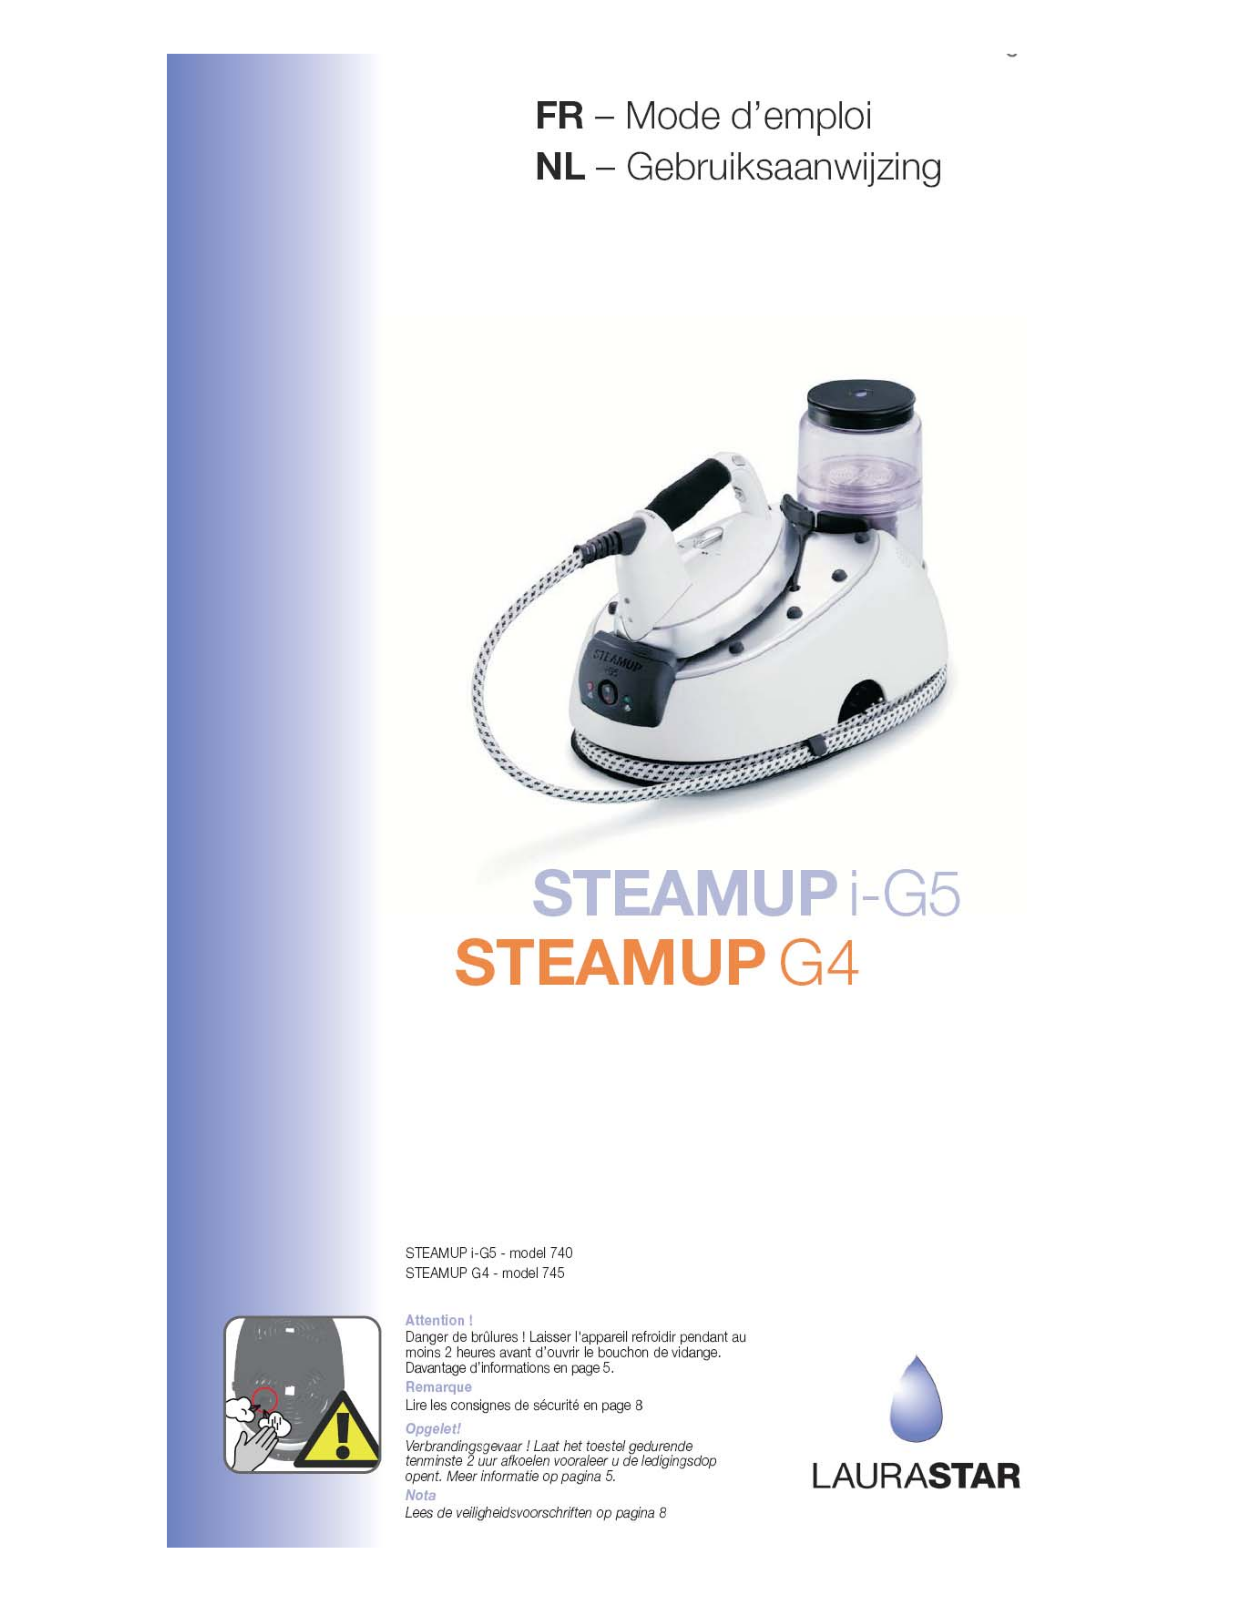 LAURASTAR Steamup IG5 User Manual